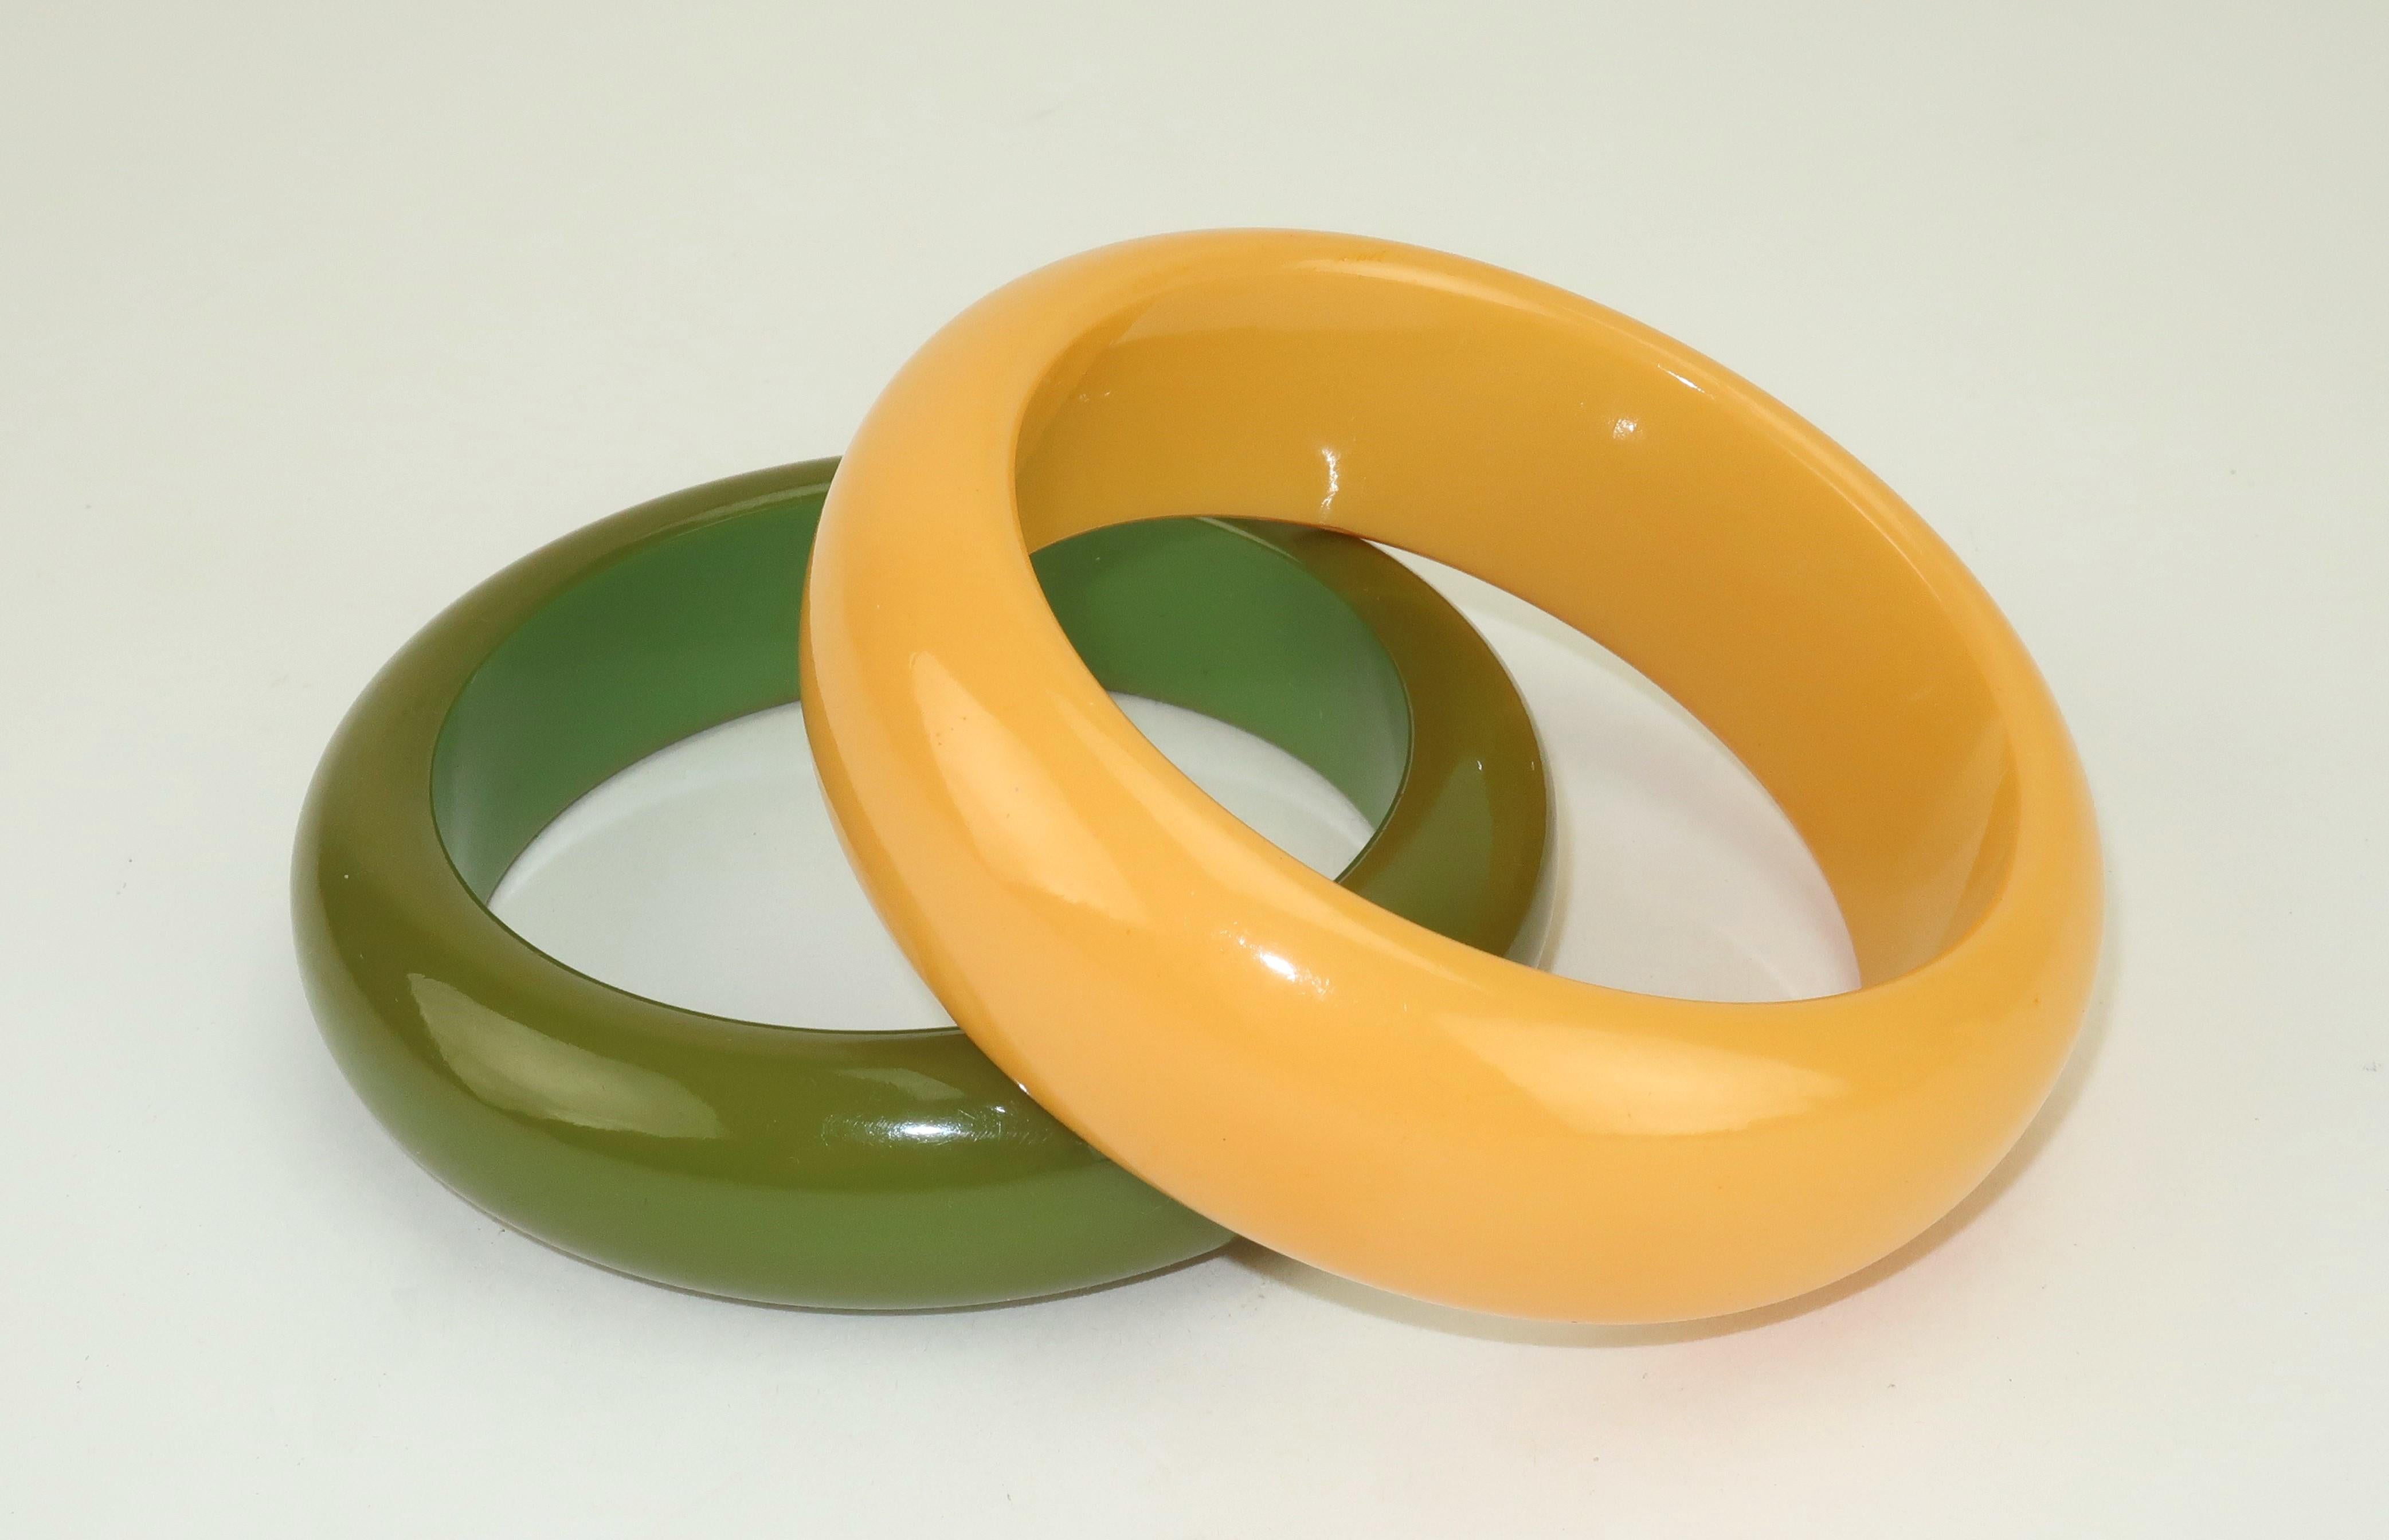 Paire de bracelets en plastique des années 1950, blanc ivoire et vert olive.  La paire est superbe lorsqu'elle est empilée ou portée séparément pour des looks différents.  Veuillez consulter la page d'accueil de Modern & Moore pour les annonces